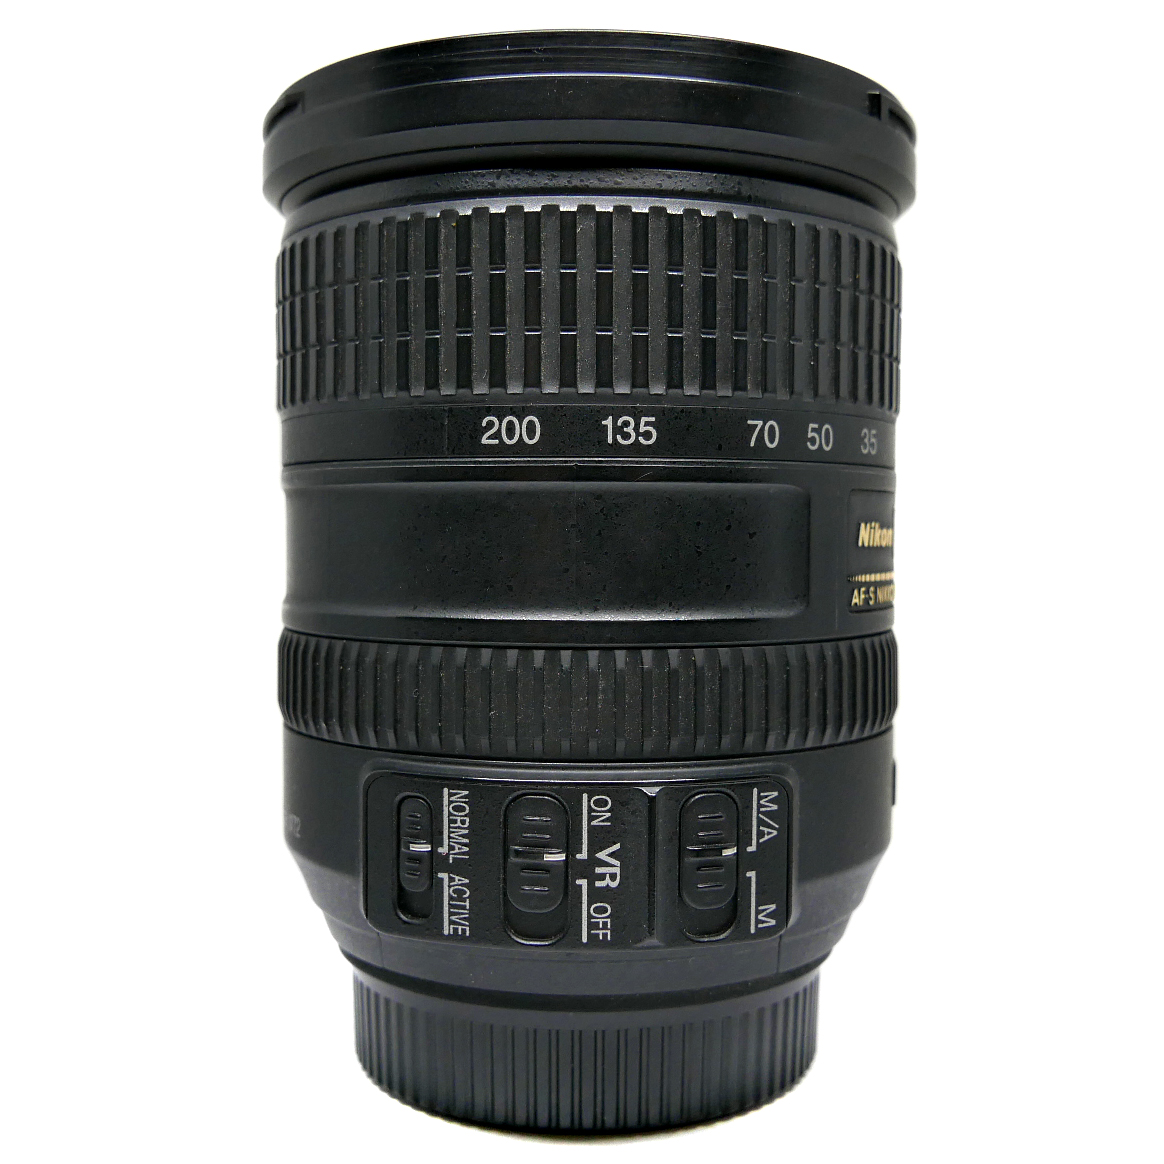 (Myyty) Nikon AF-S Nikkor 18-200mm f/3.5-5.6G ED DX VR (käytetty)